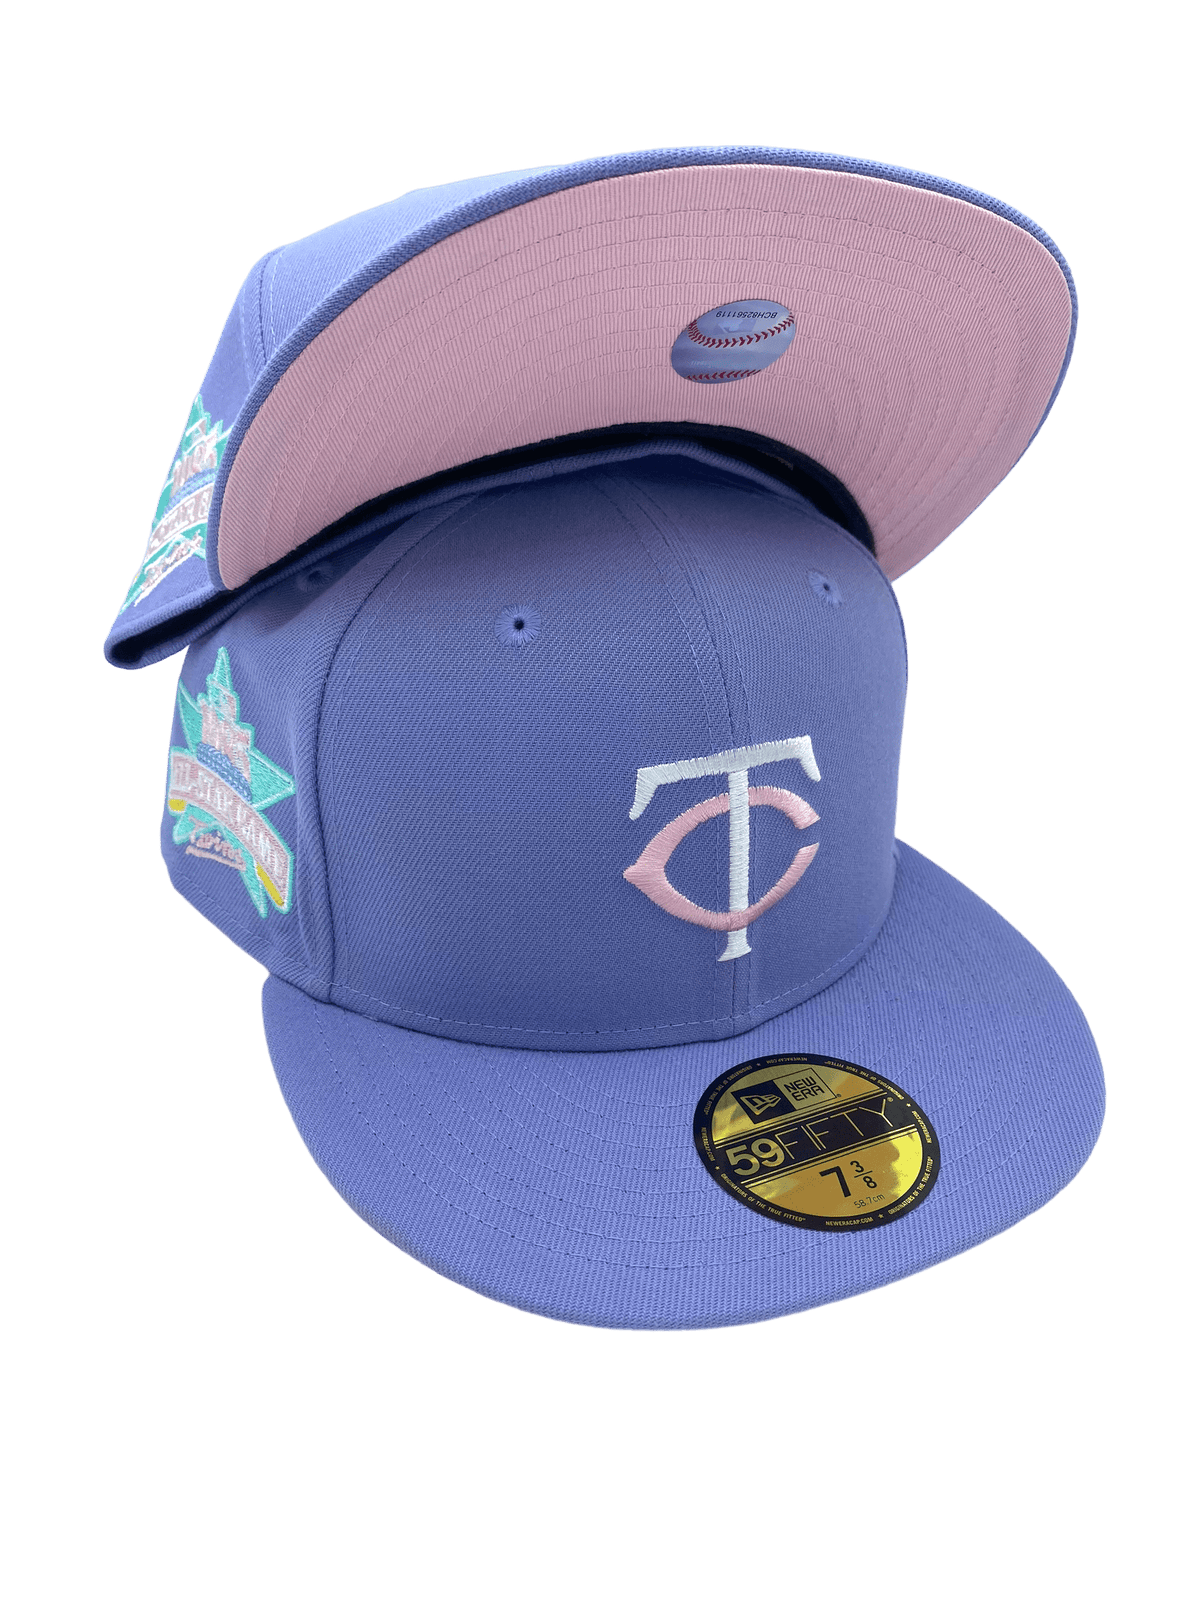 Anaheim Ducks New Era 59FIFTY Fitted Hat (Black Purple Light Blue Under BRIM) 7 1/8